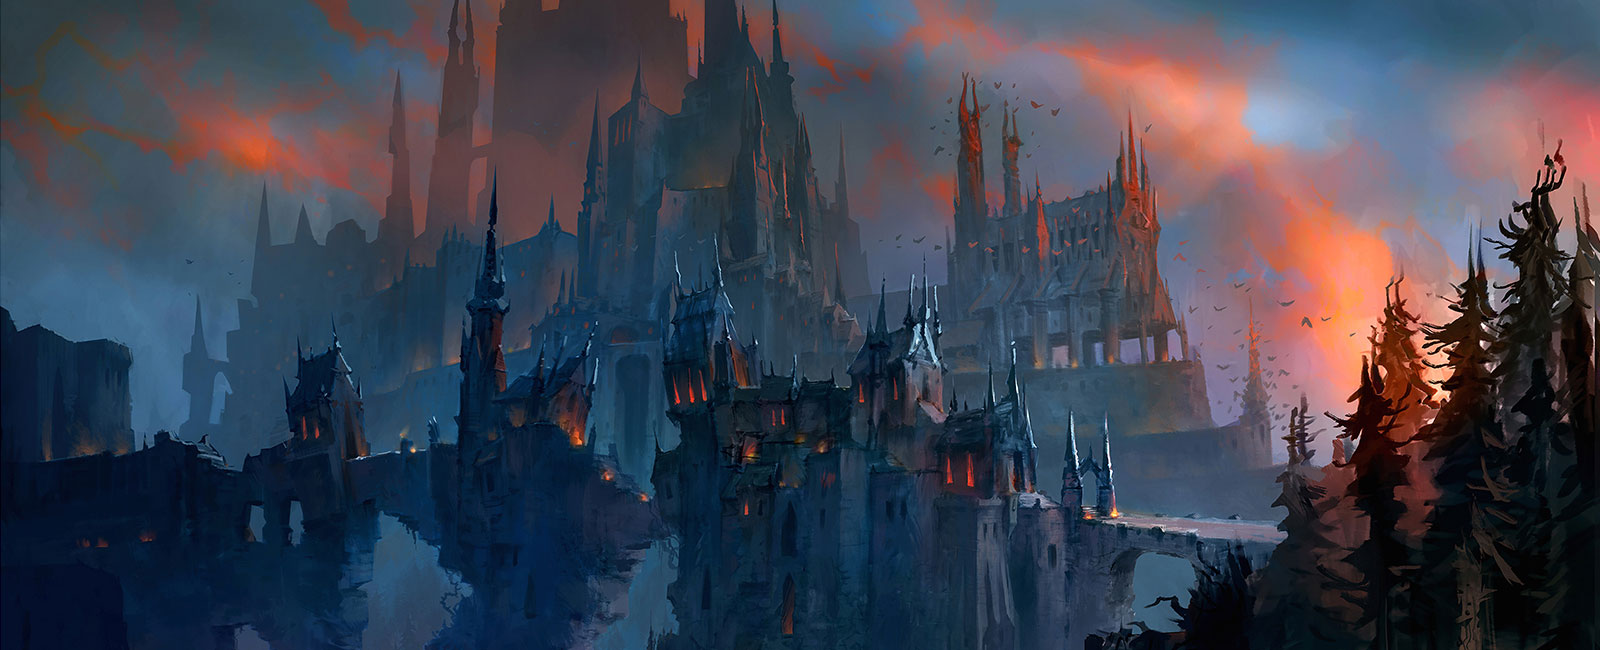 World of Warcraft: Shadowlands – есть ли у Темных земель шанс на светлое будущее?